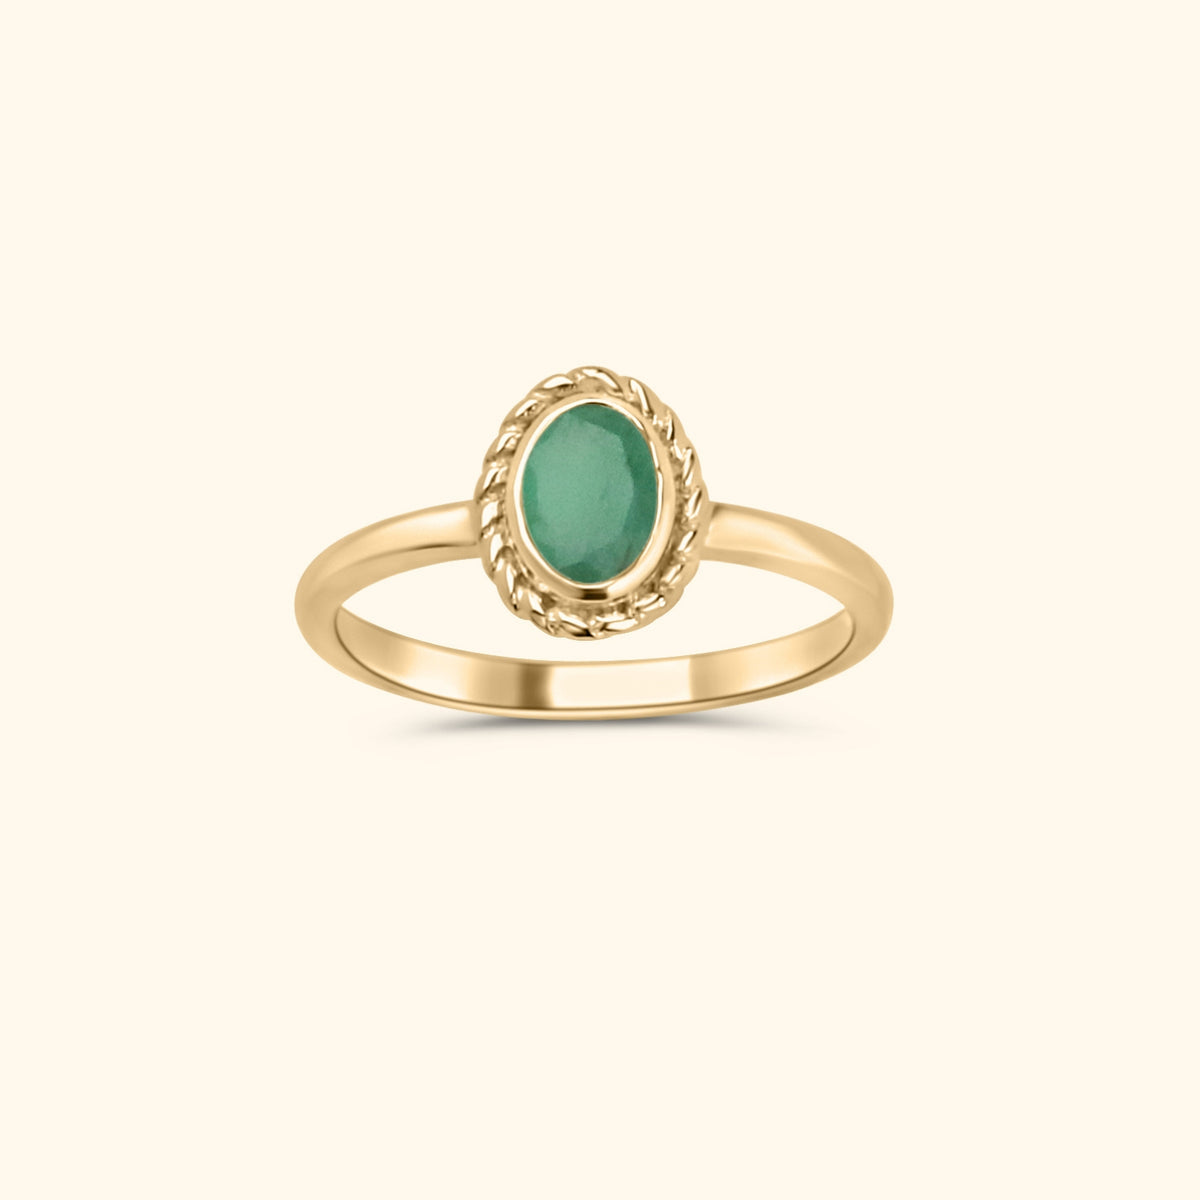 Mei smaragd - Birthstone ring